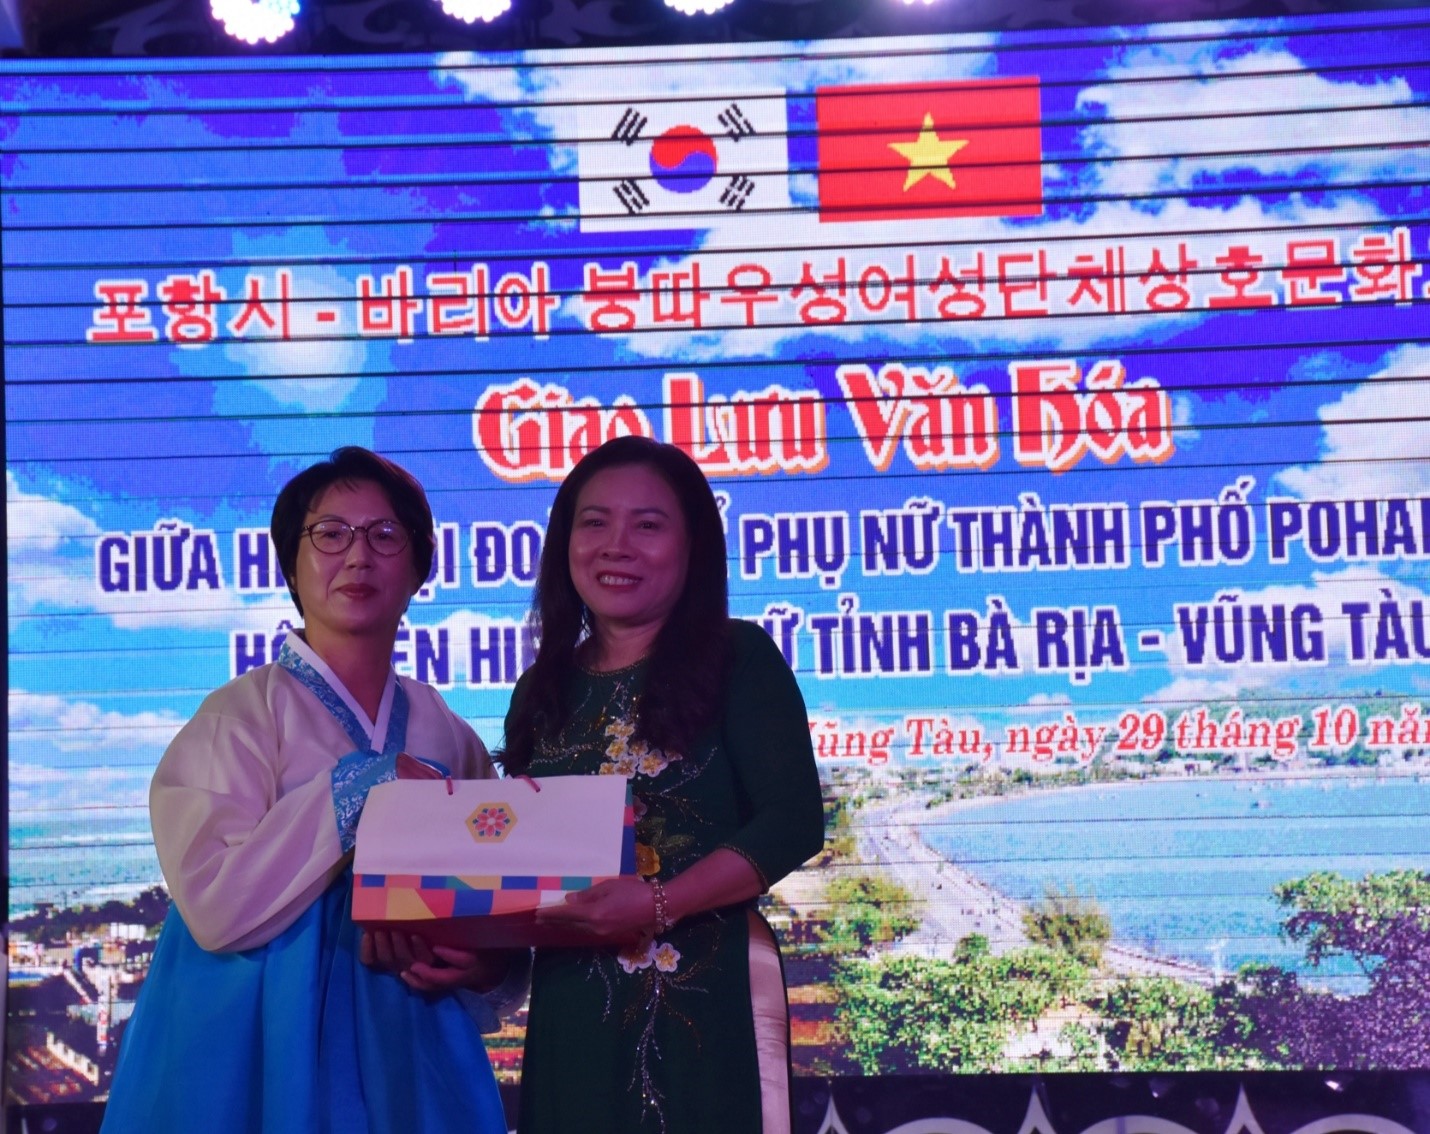 Đoàn thể phụ nữ Thành phố Pohang tặng quà lưu niệm cho Hội LHPN tỉnh